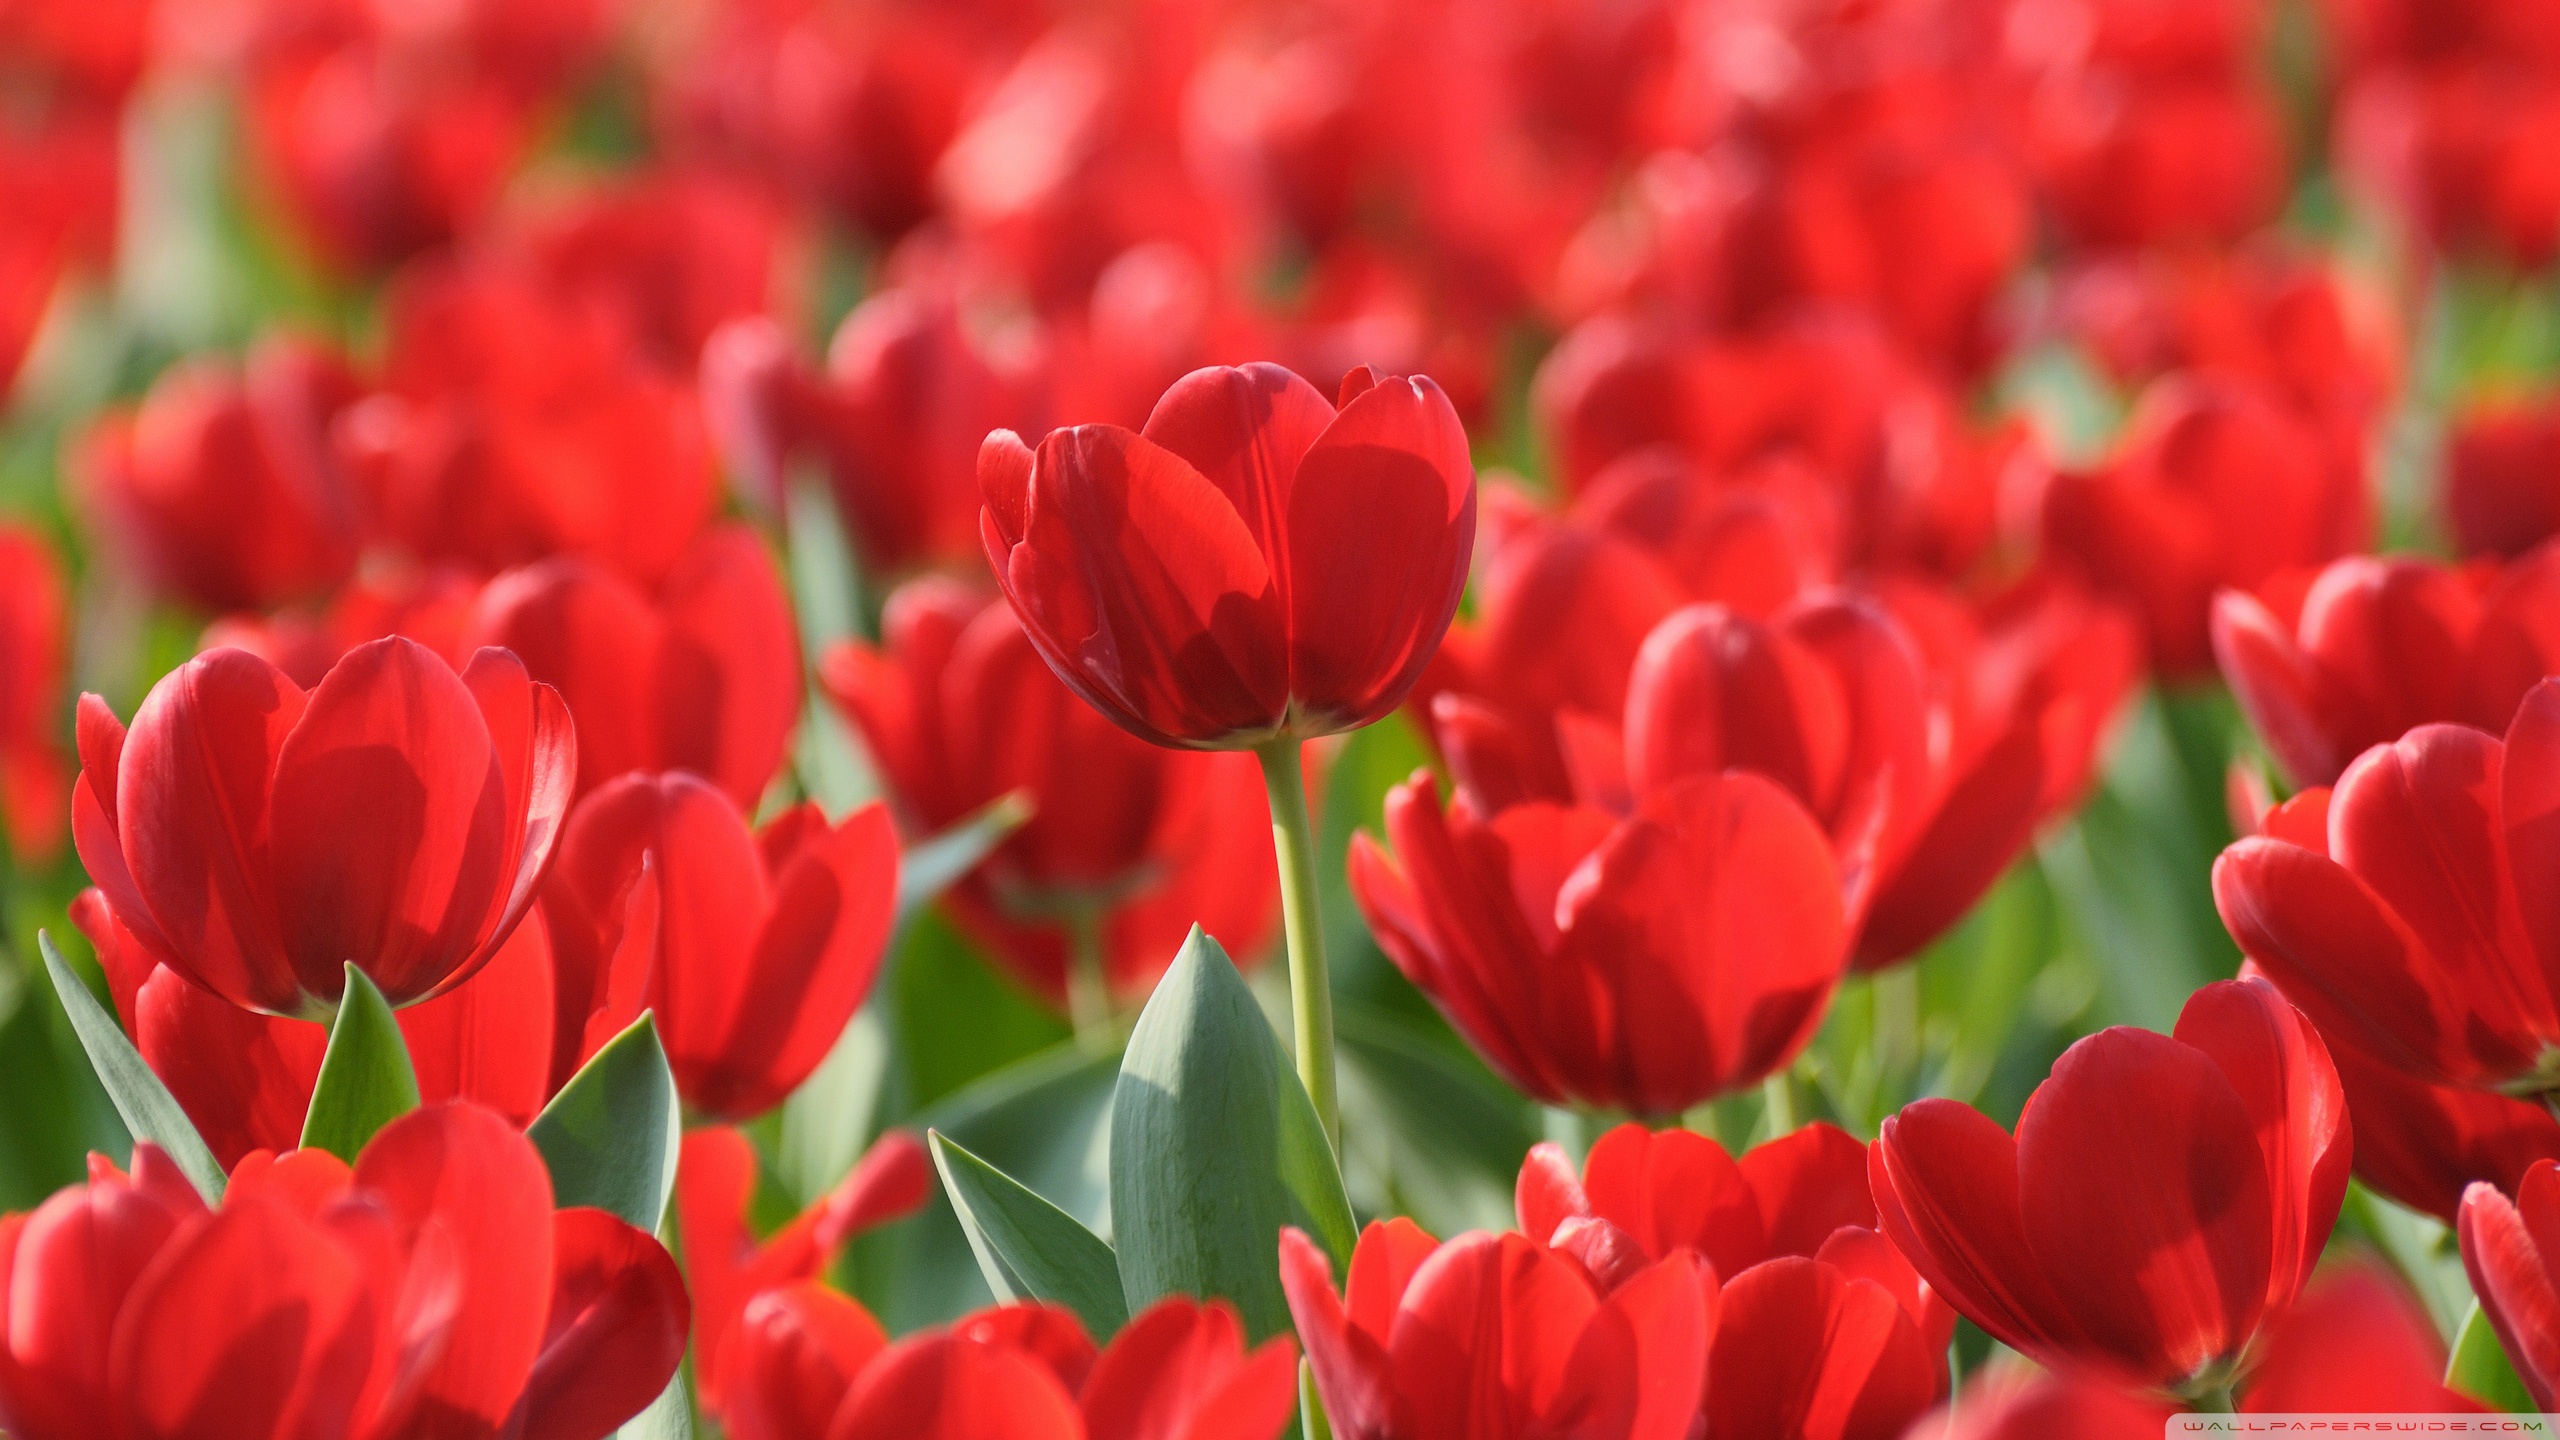 Red tulips field hd